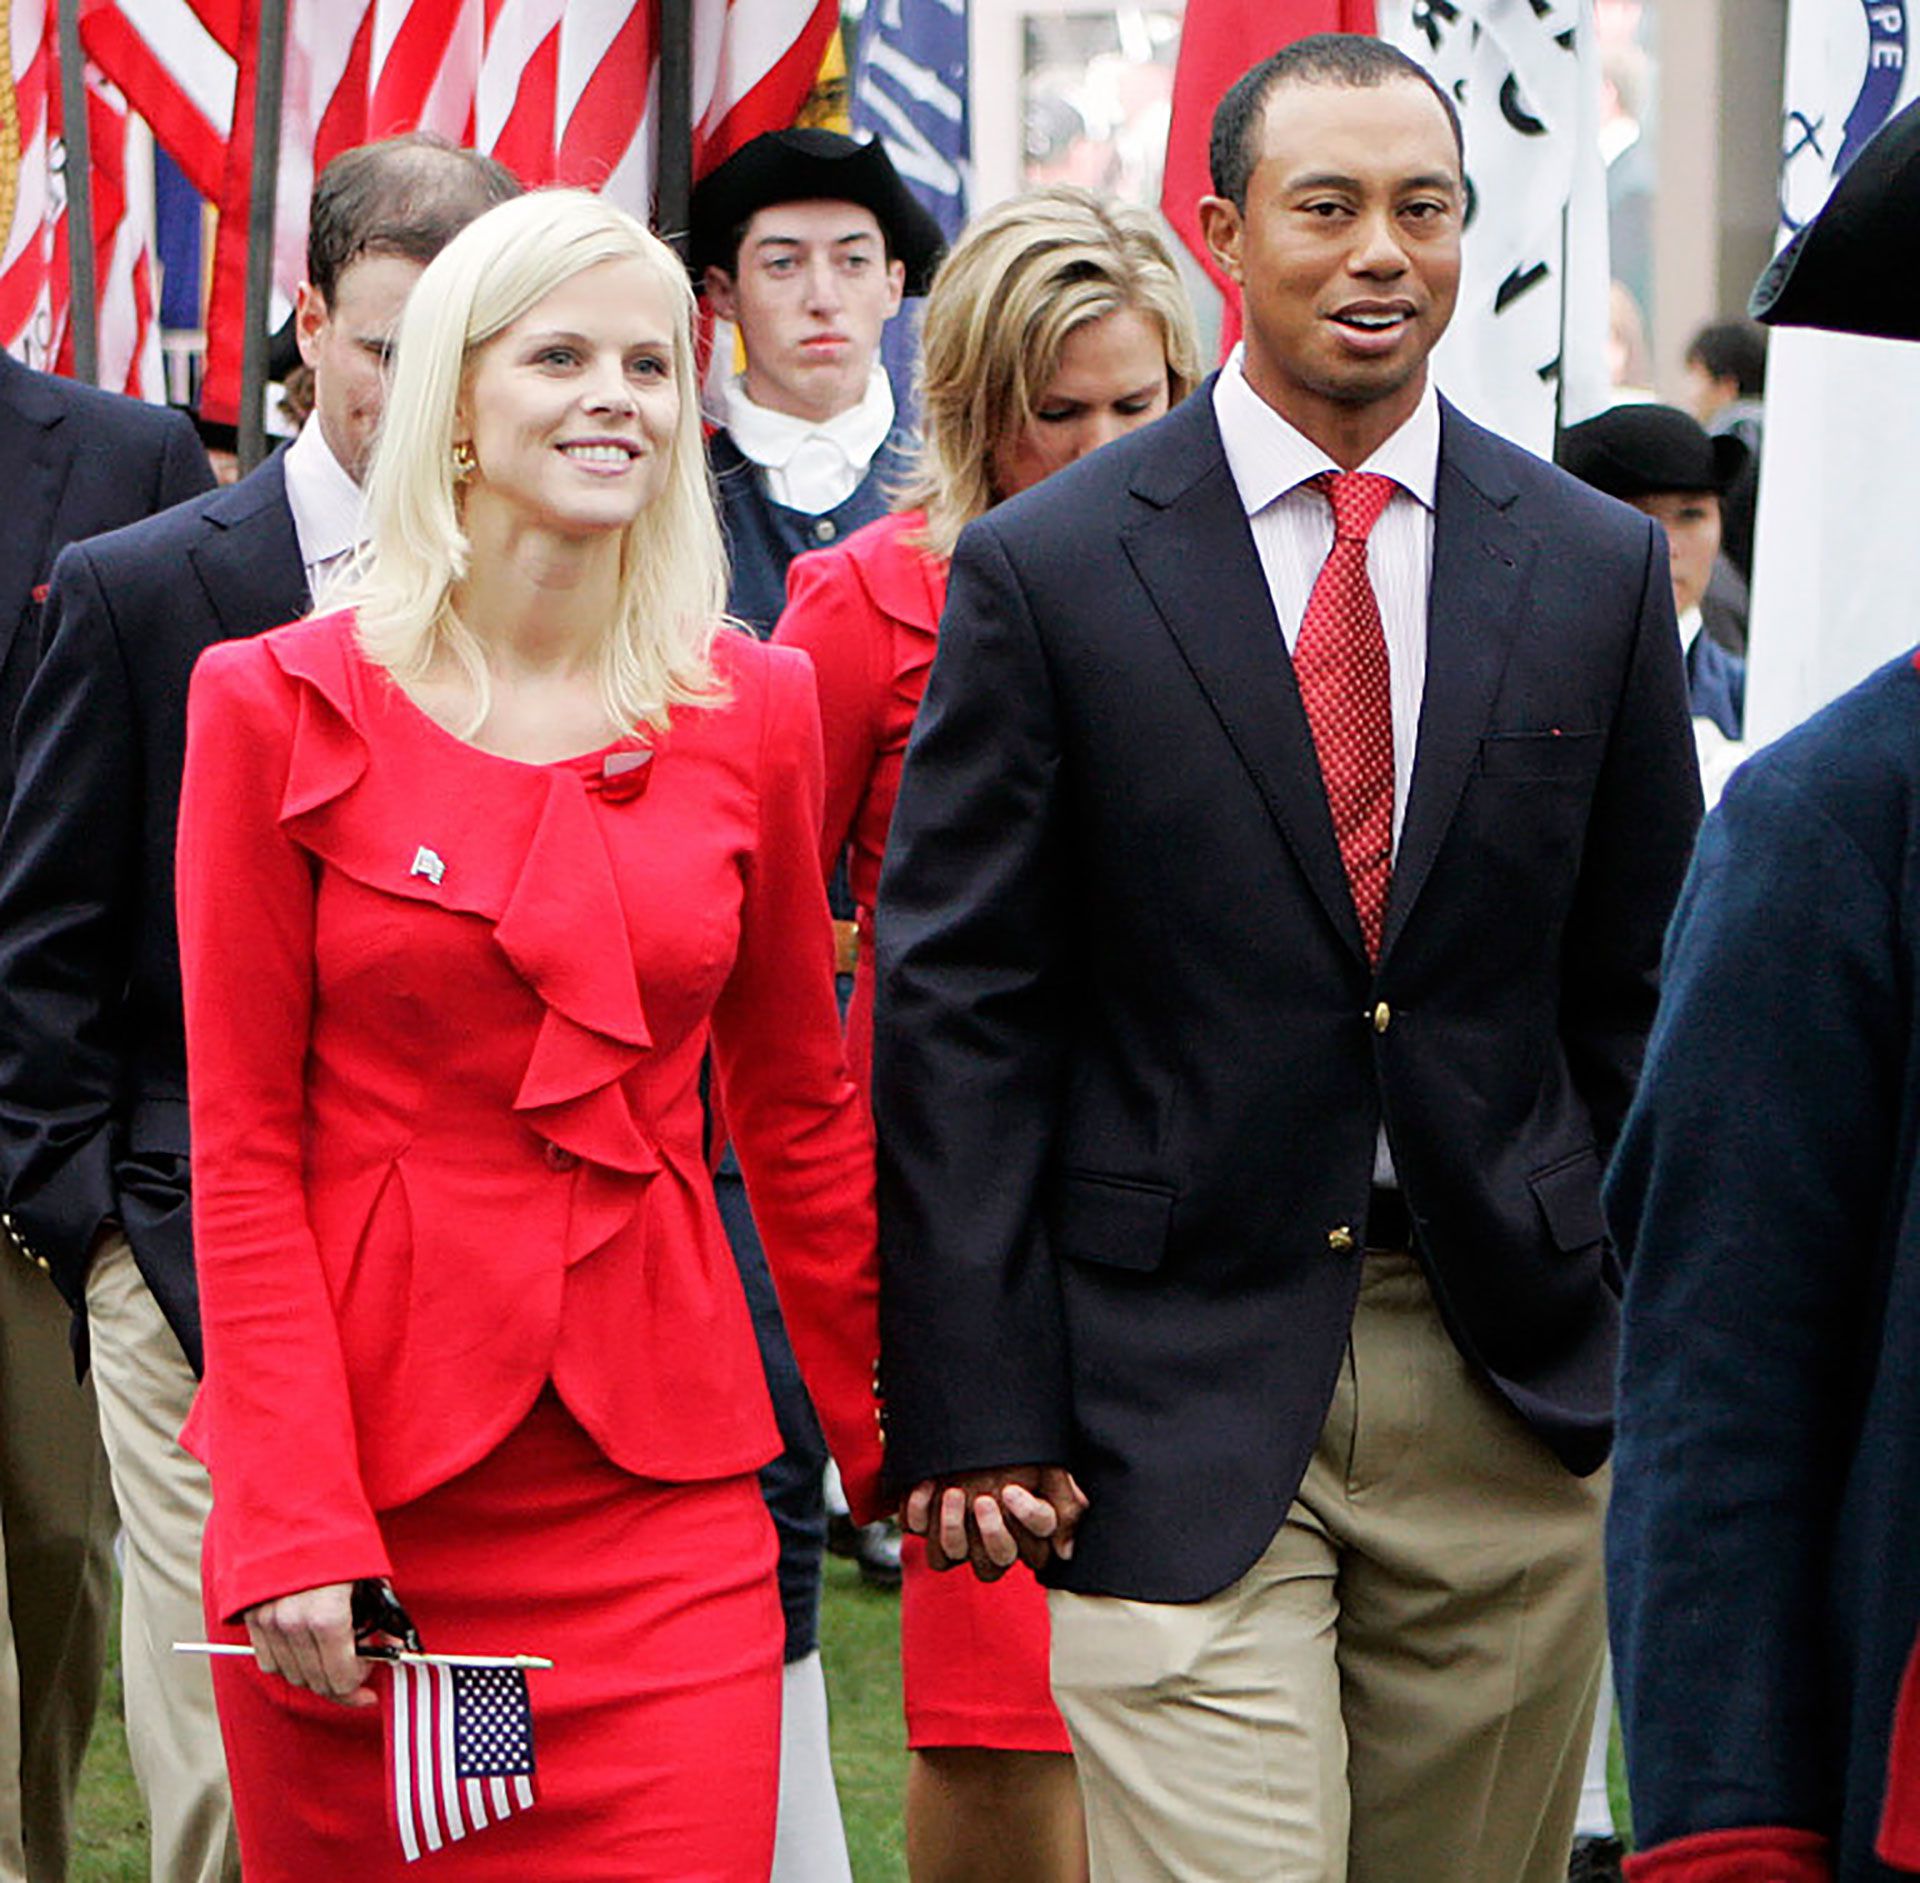 Tiger con su esposa Elin, con quien se casó en 2004. Woods conoció a la modelo sueca porque trabajaba de niñera del golfista sueco Jesper Parnevik. Se divorciaron en 2010 en medio de un escándalo. (AP)